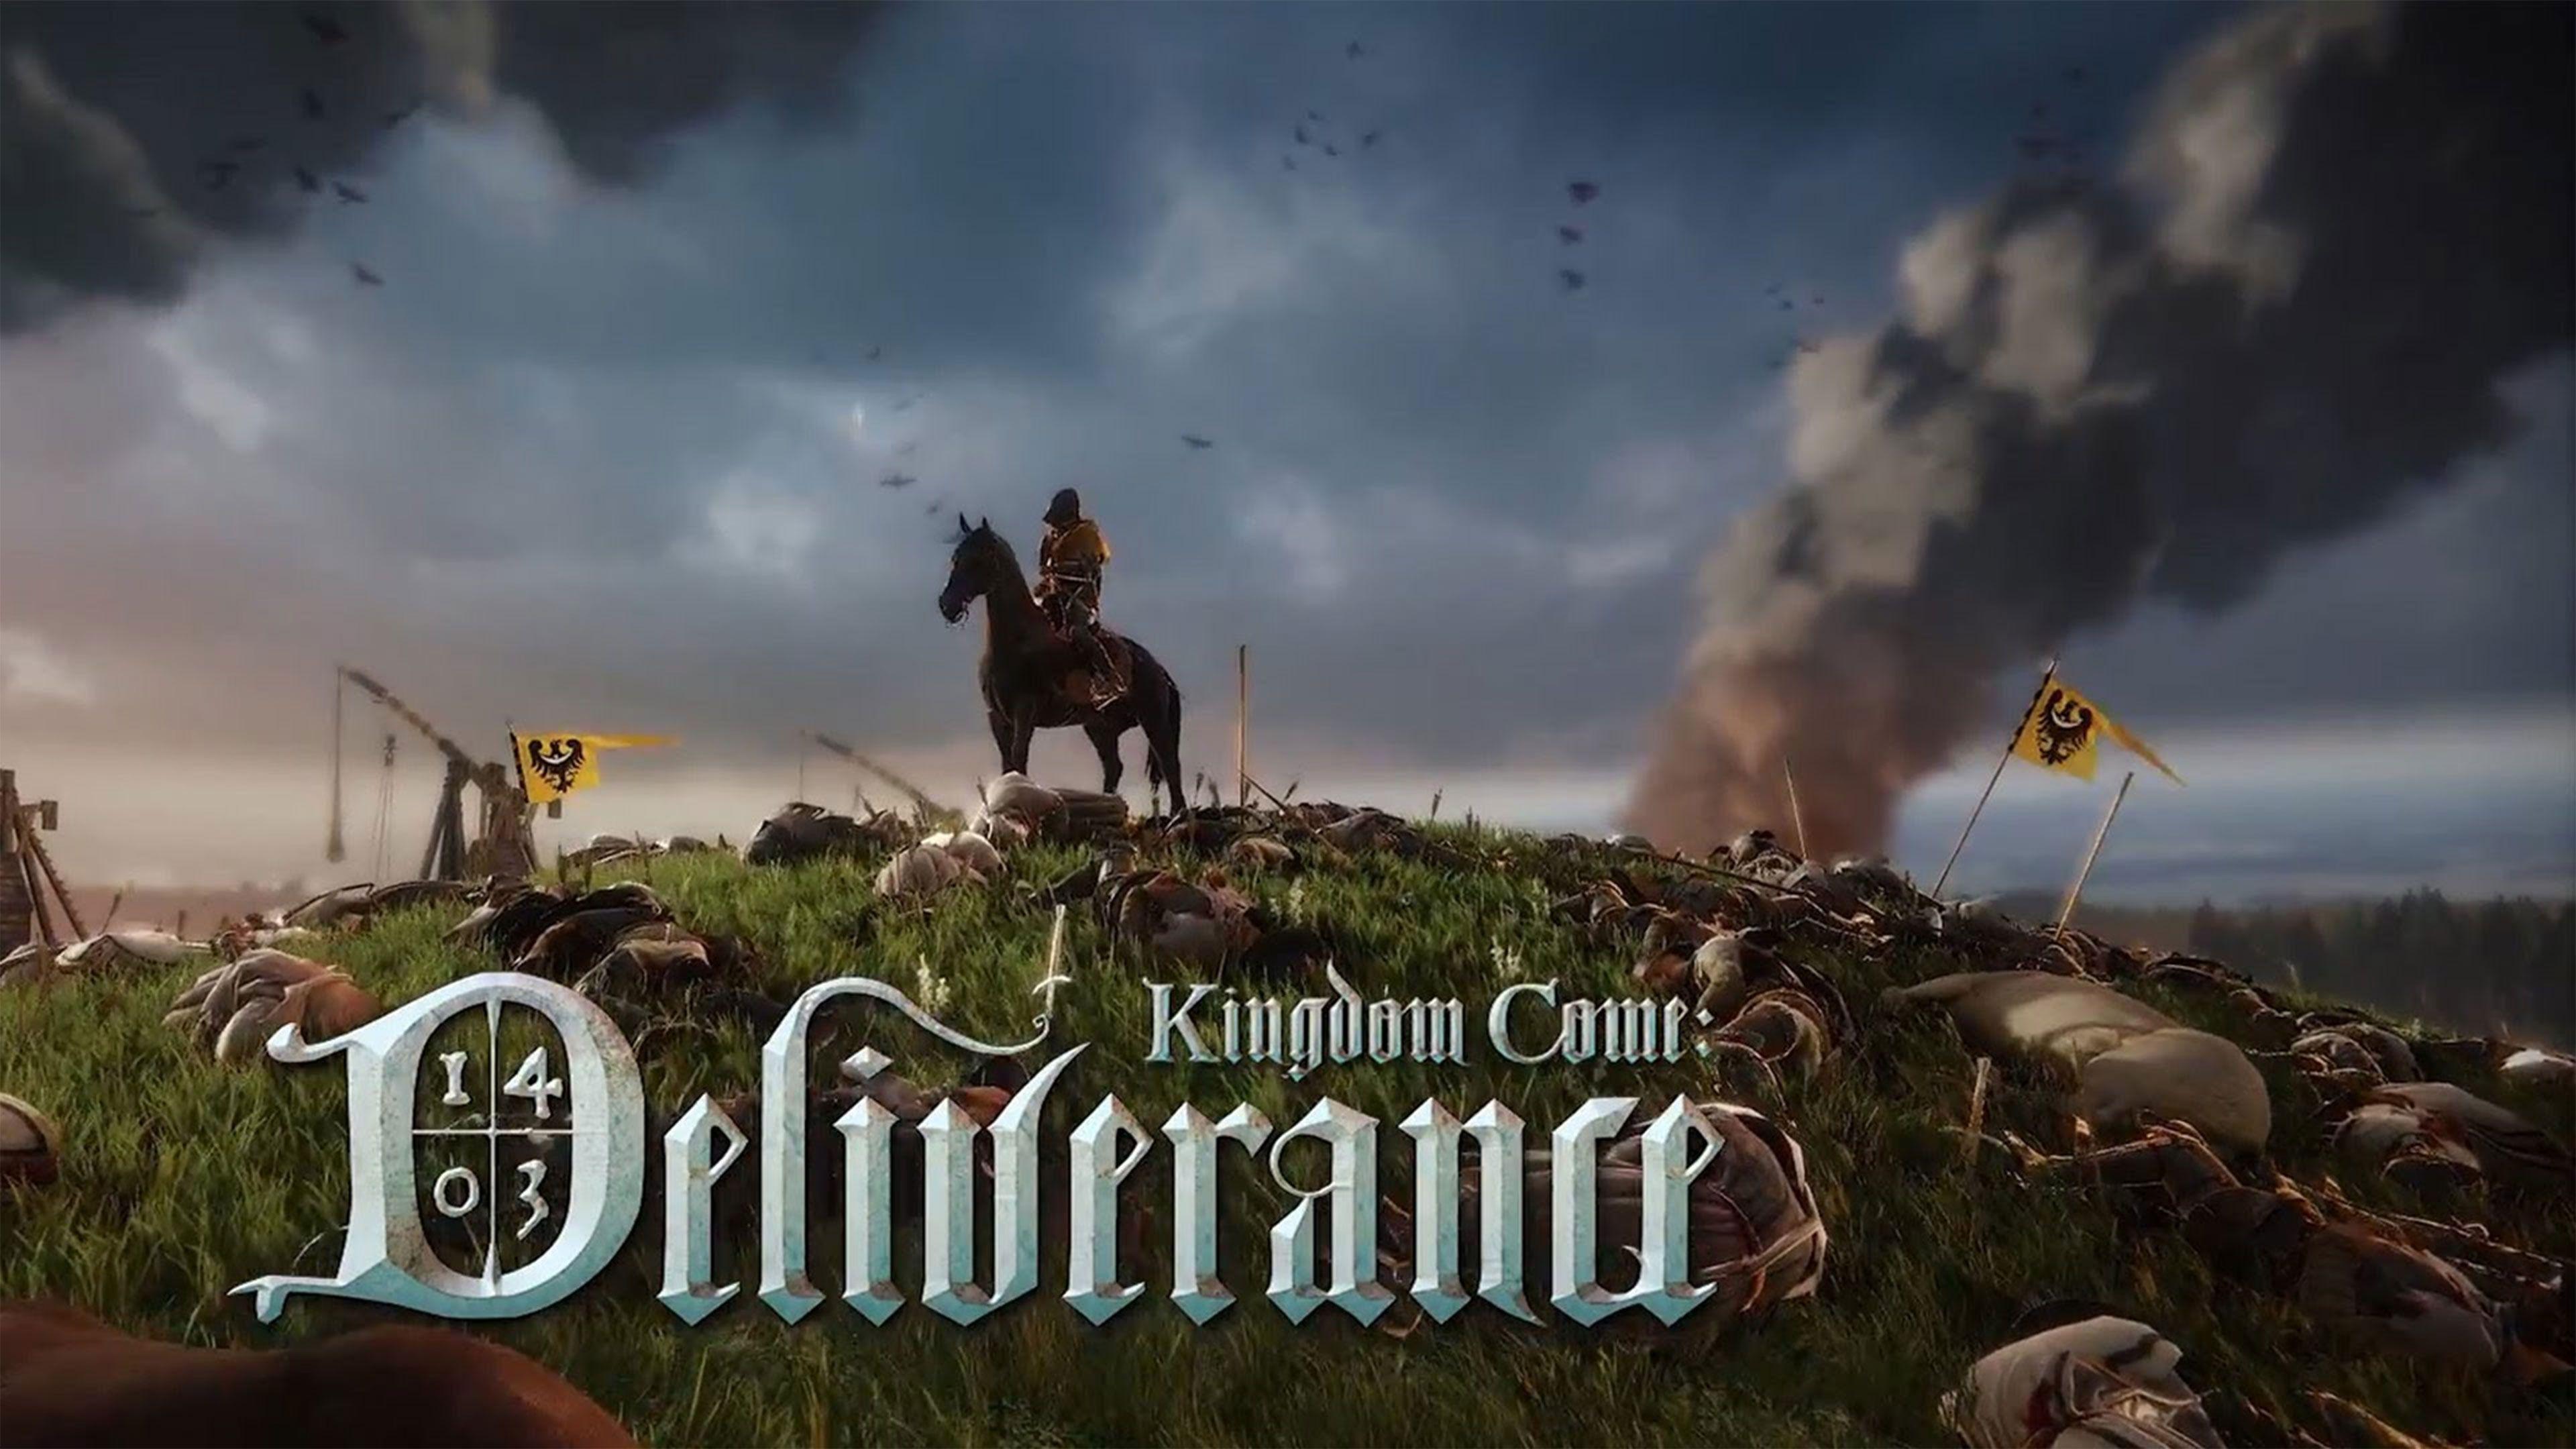 Kingdom Come: Deliverance Wallpaper in Ultra HDK